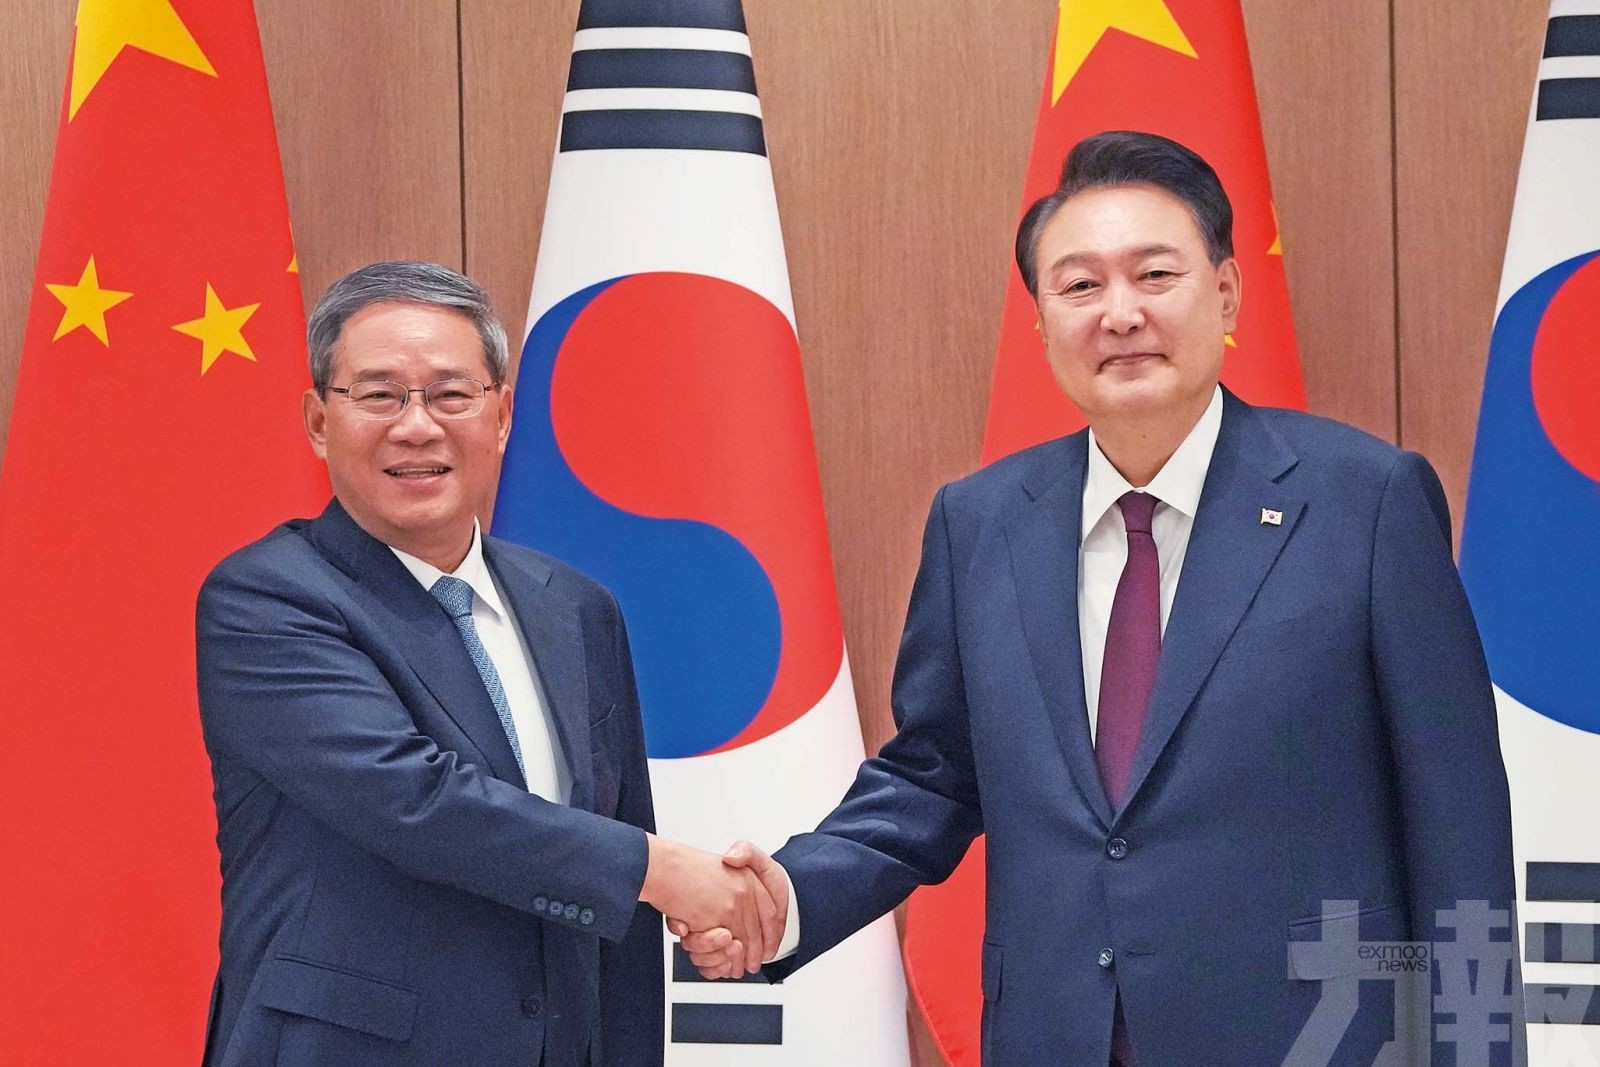 中韓將設外交安全對話機制6月開會